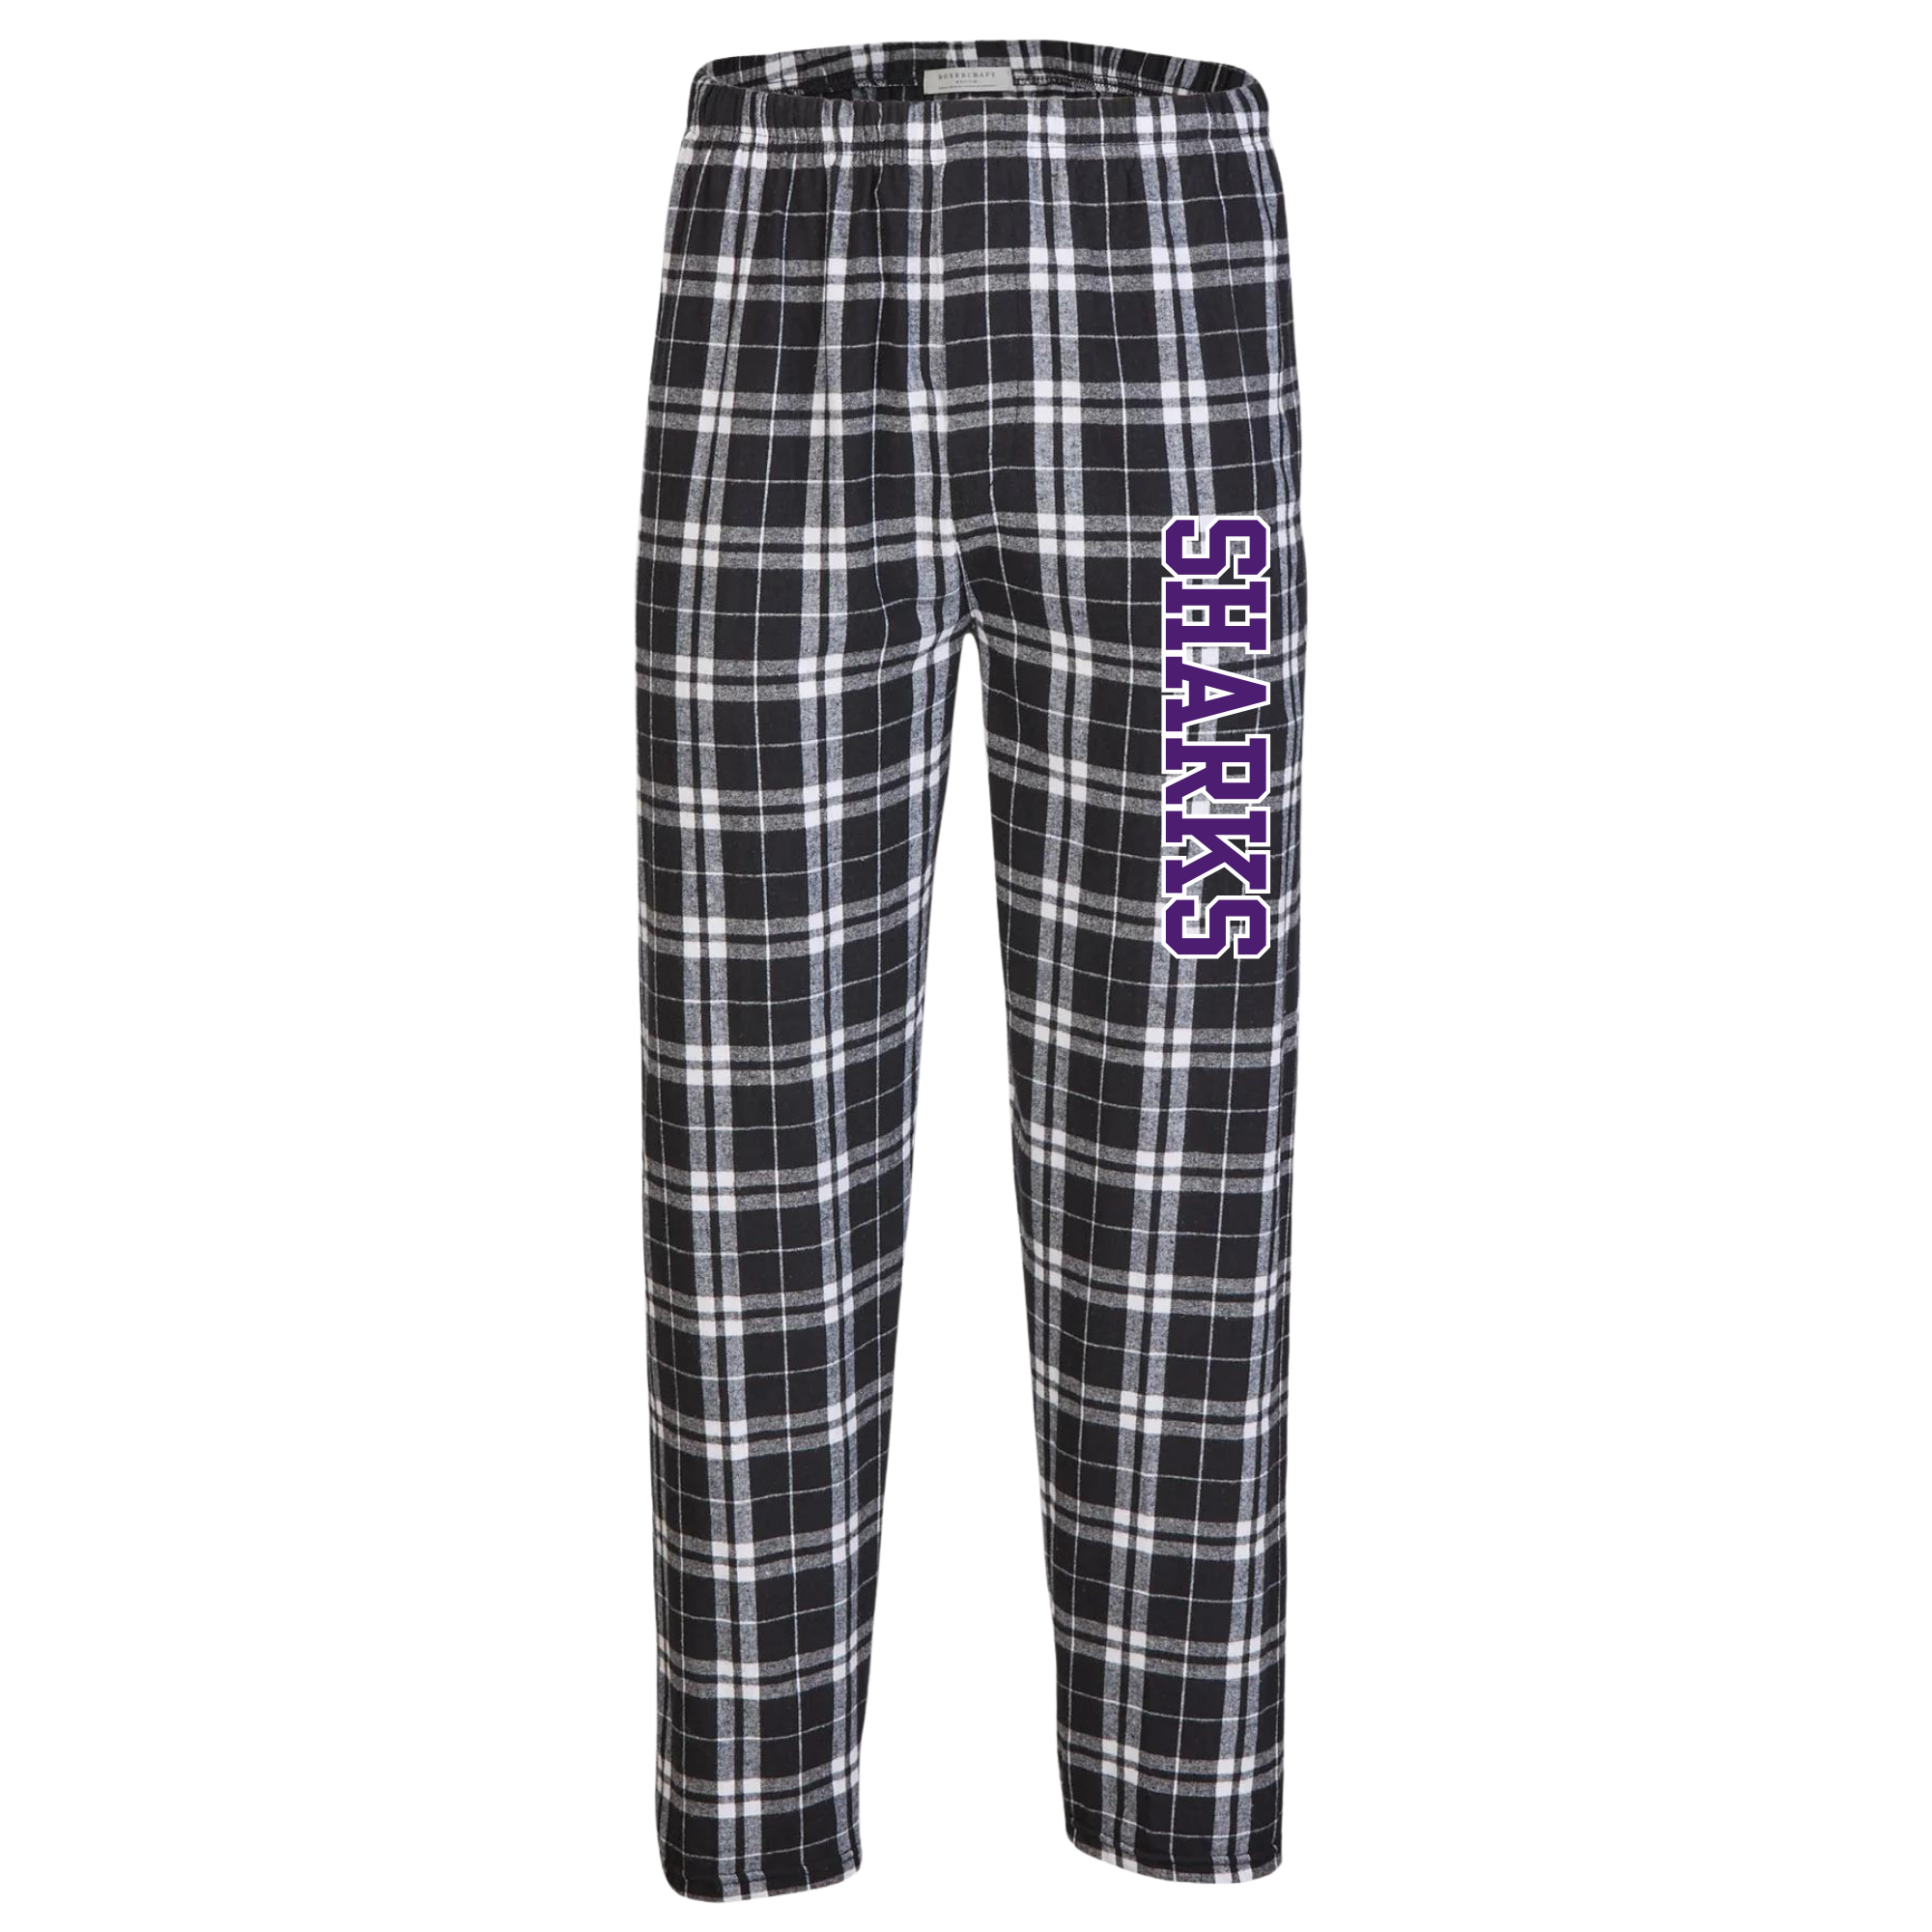 Boxercraft Flannel Pants (Customized) - Smyrna